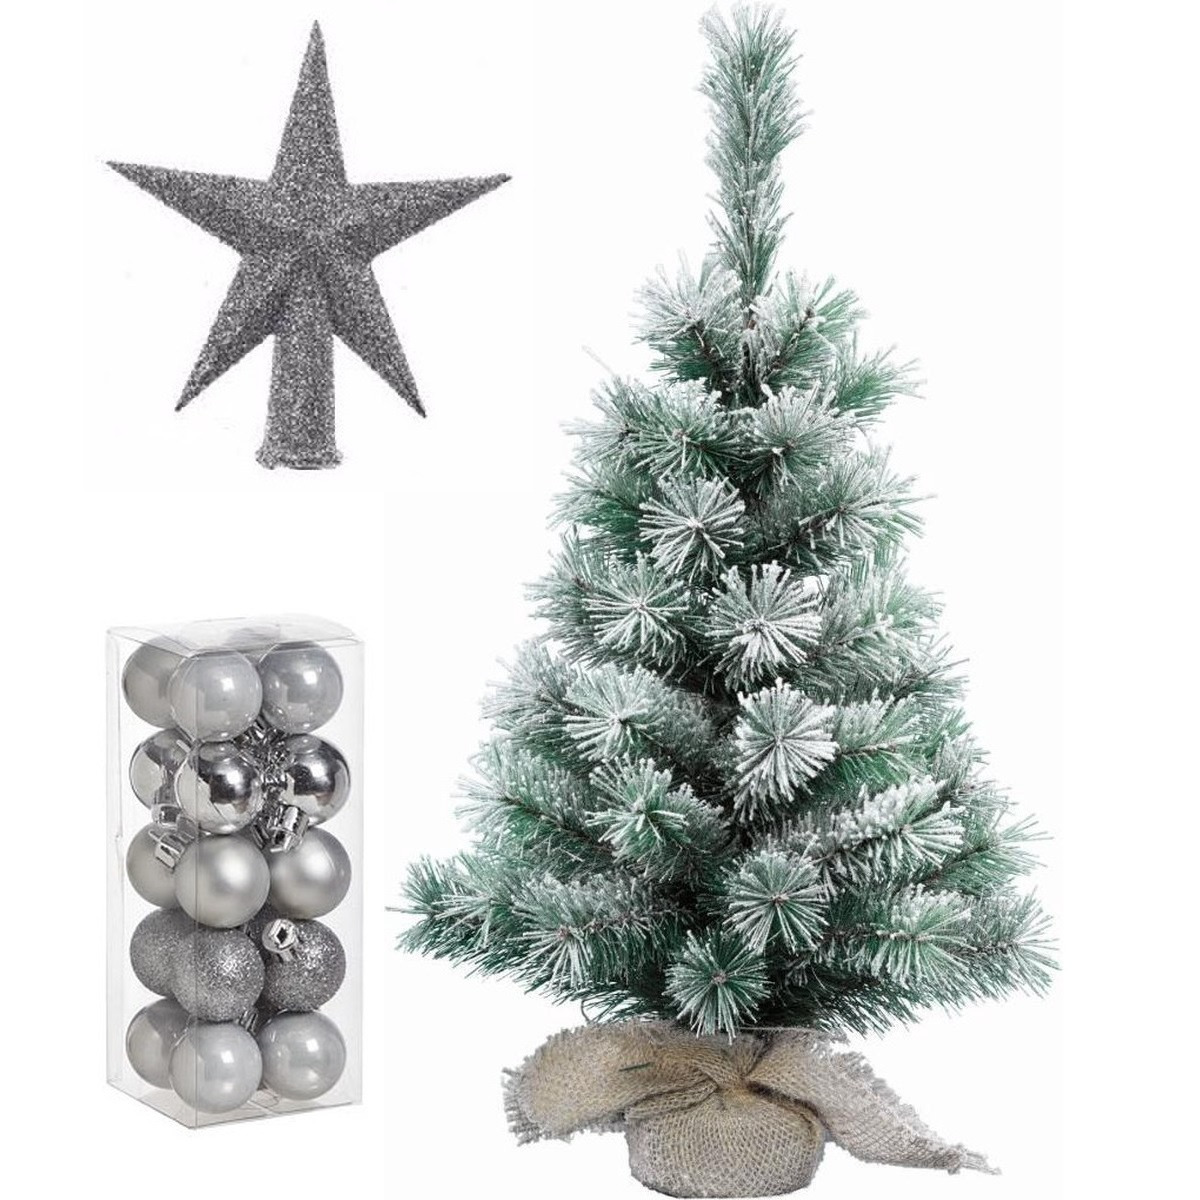 Kunst kerstboom met sneeuw 35 cm in jute zak inclusief zilveren versiering 21-delig